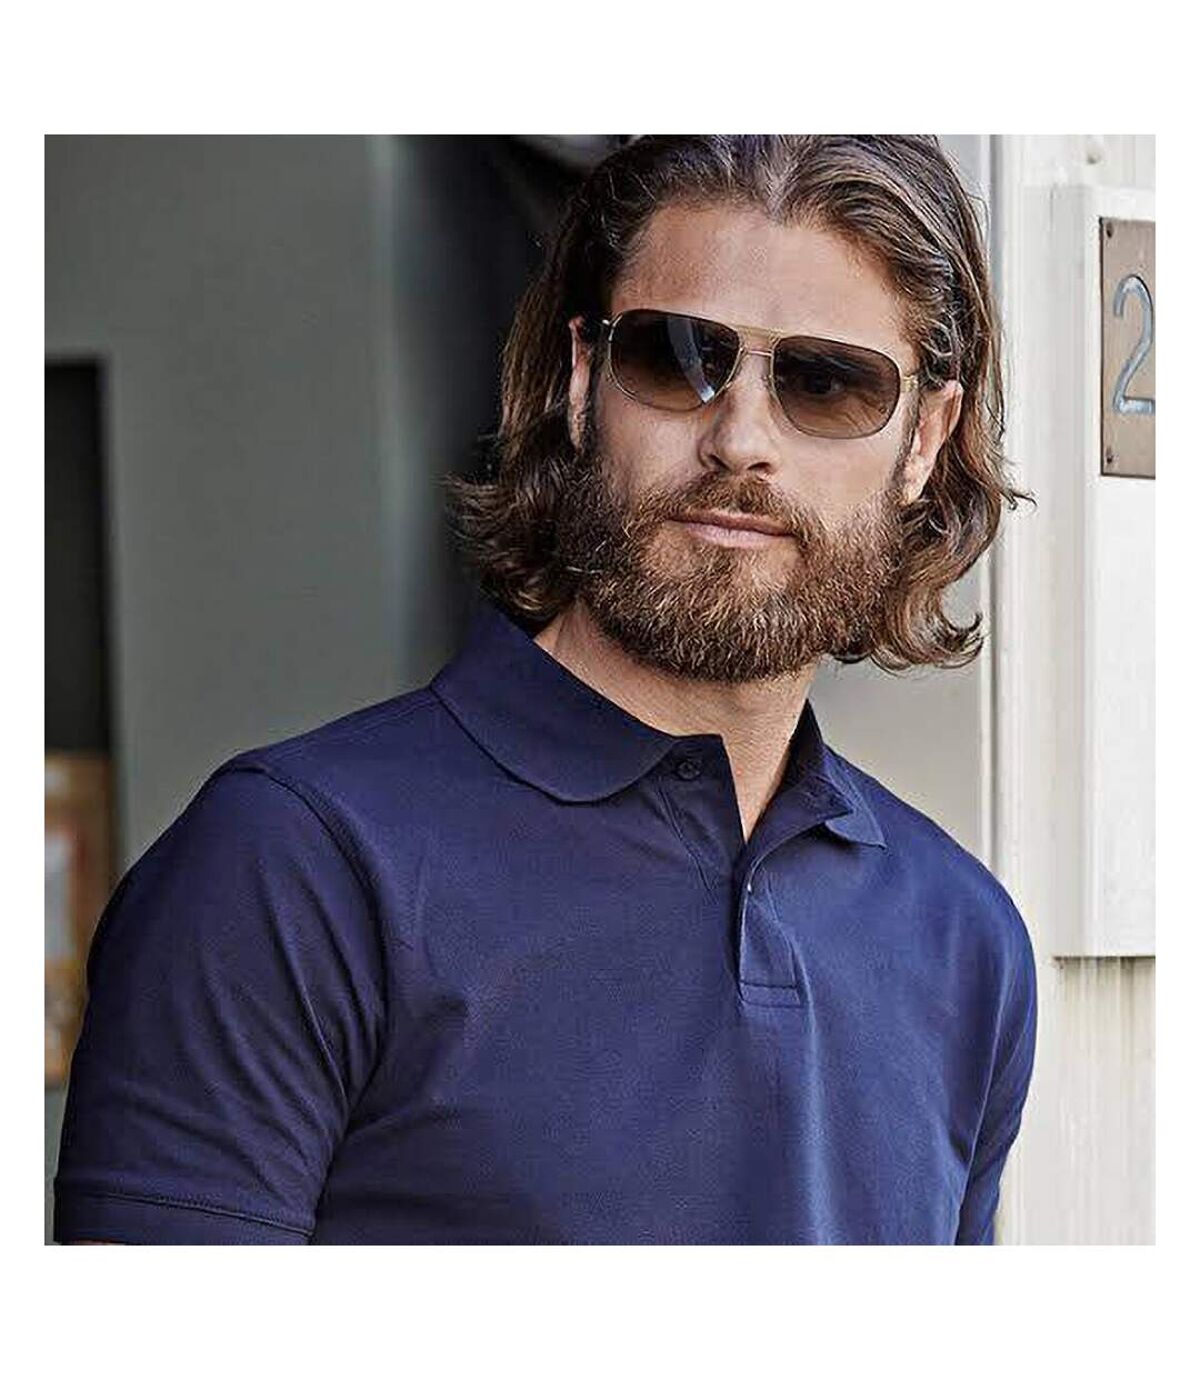 Tee Jays Mens Heavy Pique Short Sleeve Polo Shirt (Navy Blue)